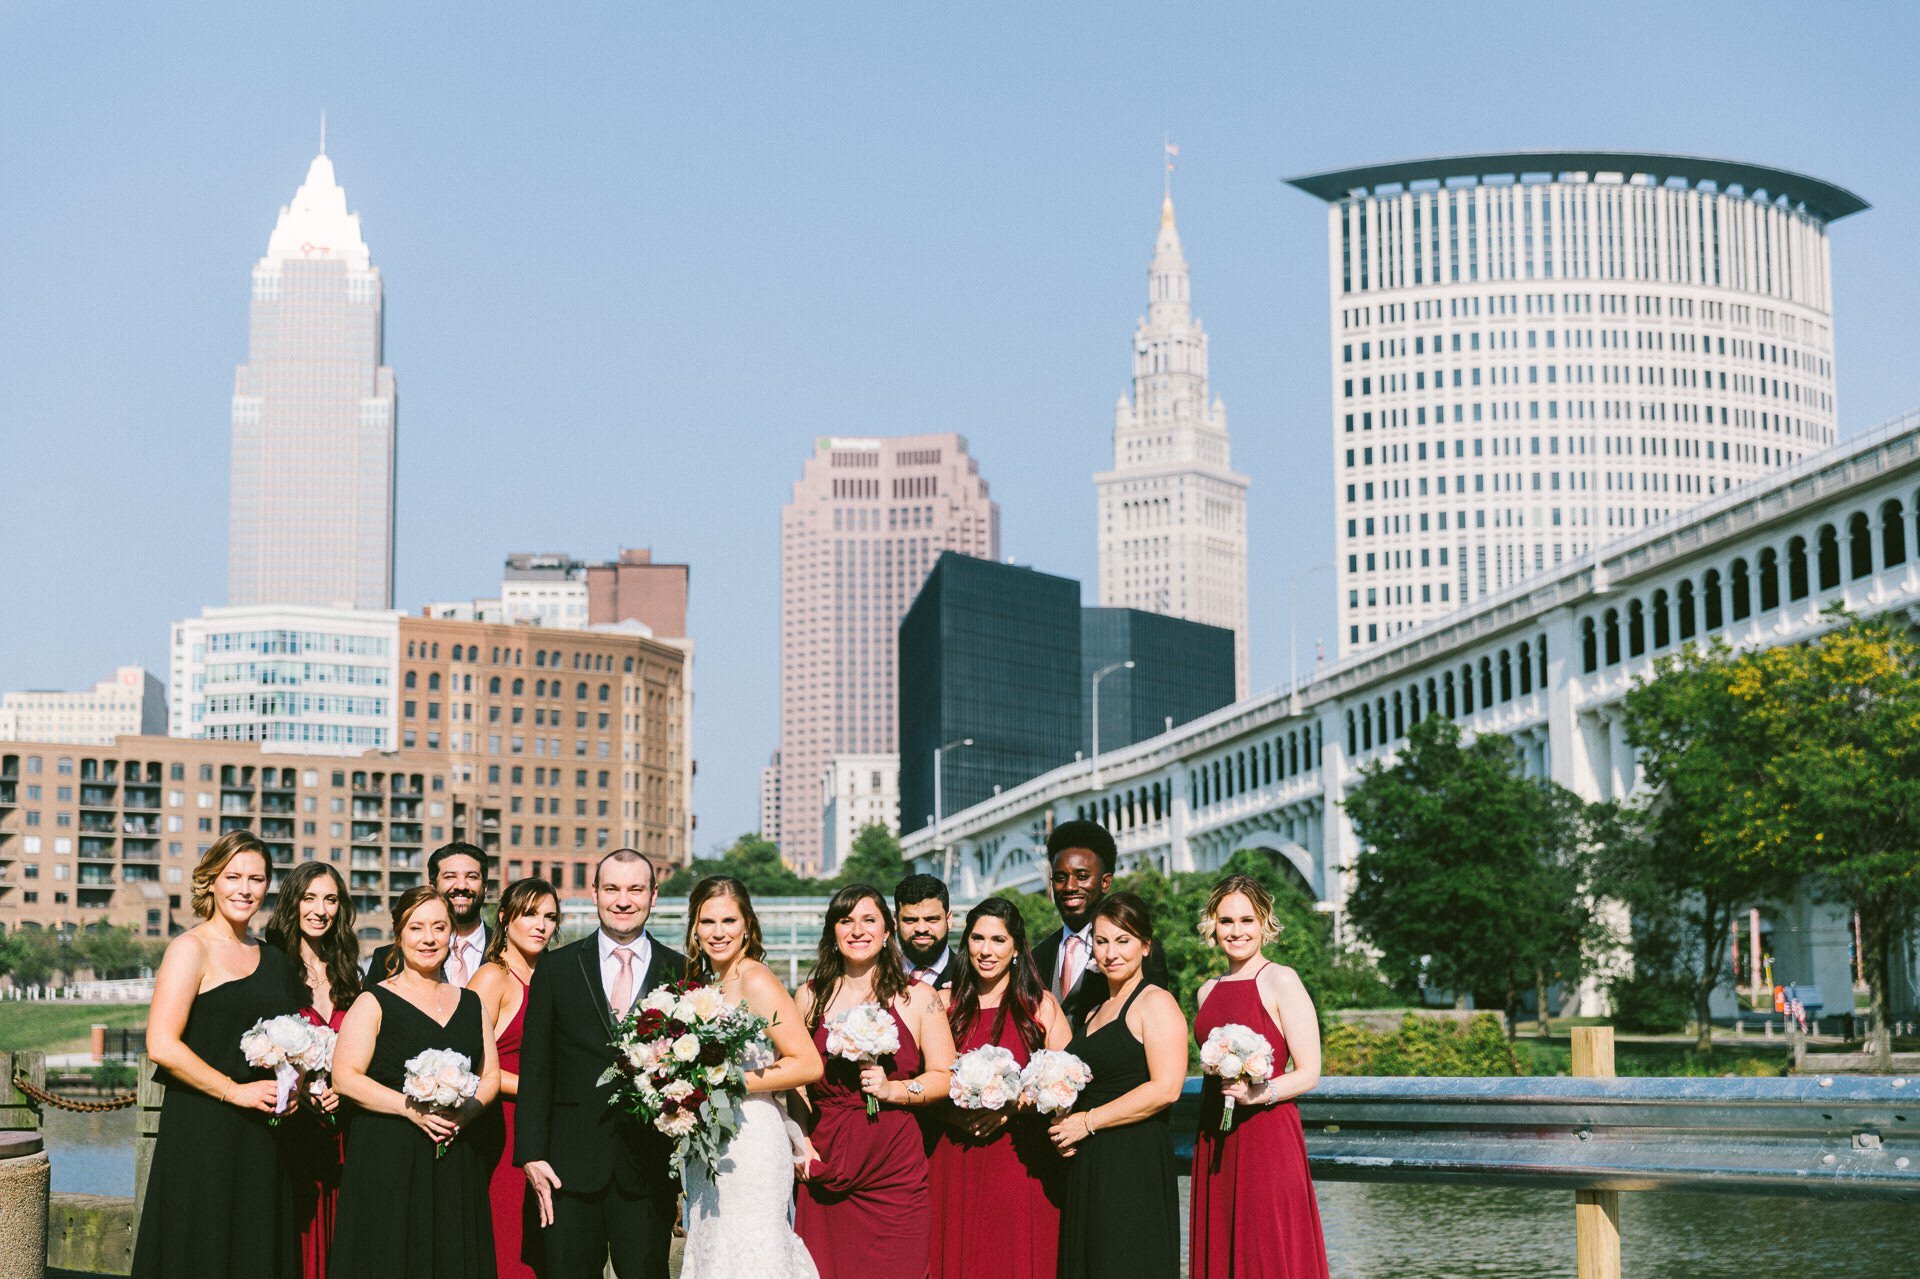 Agora Theater and Ballroom Wedding Photos in Cleveland 1 37.jpg